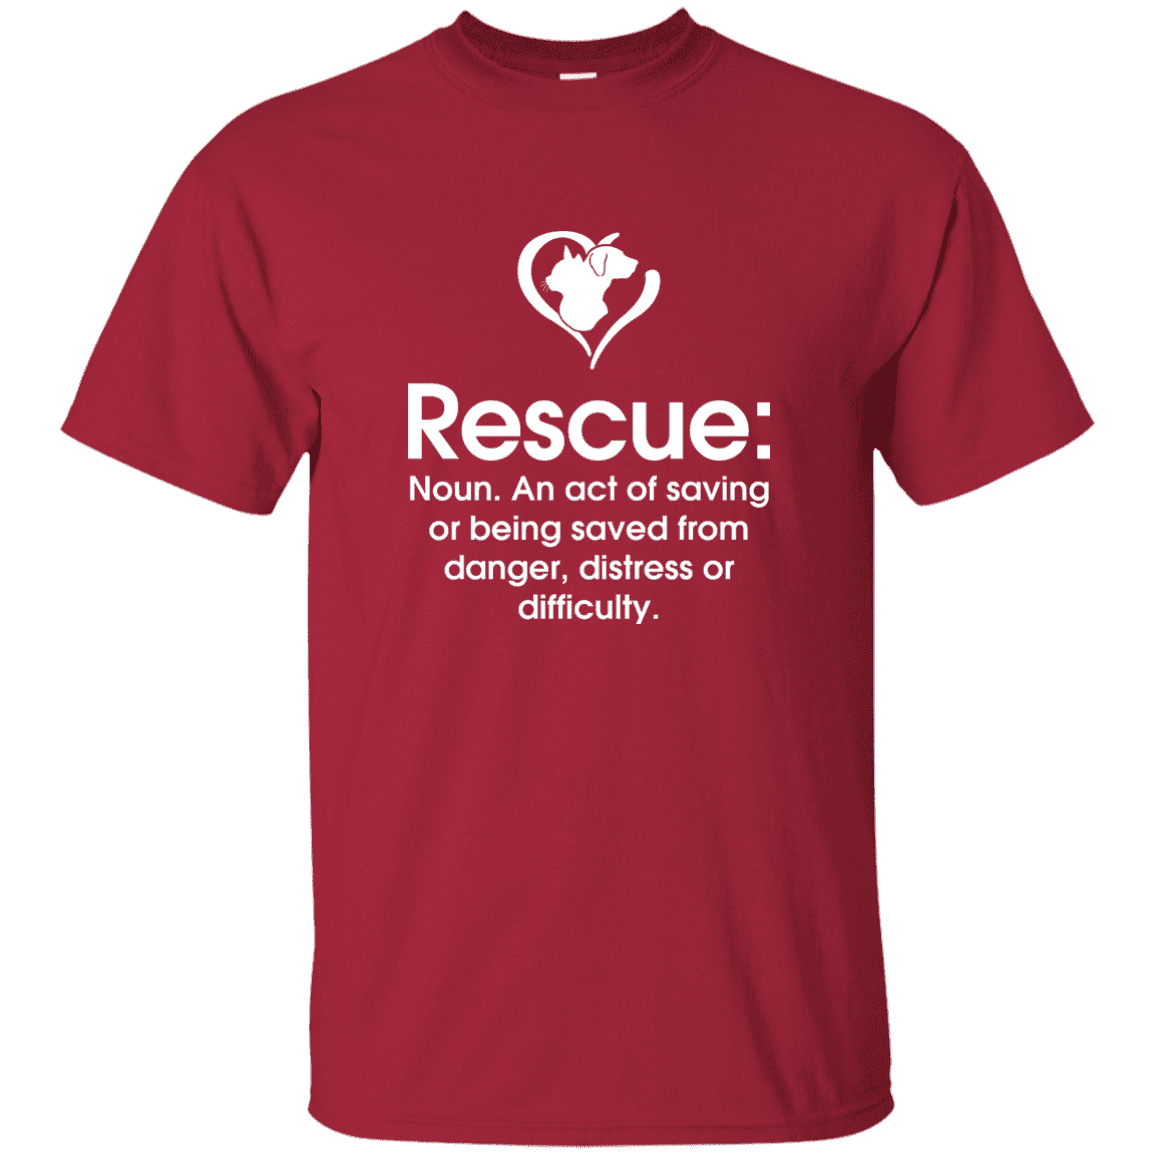 Rescue Noun - T Shirt.